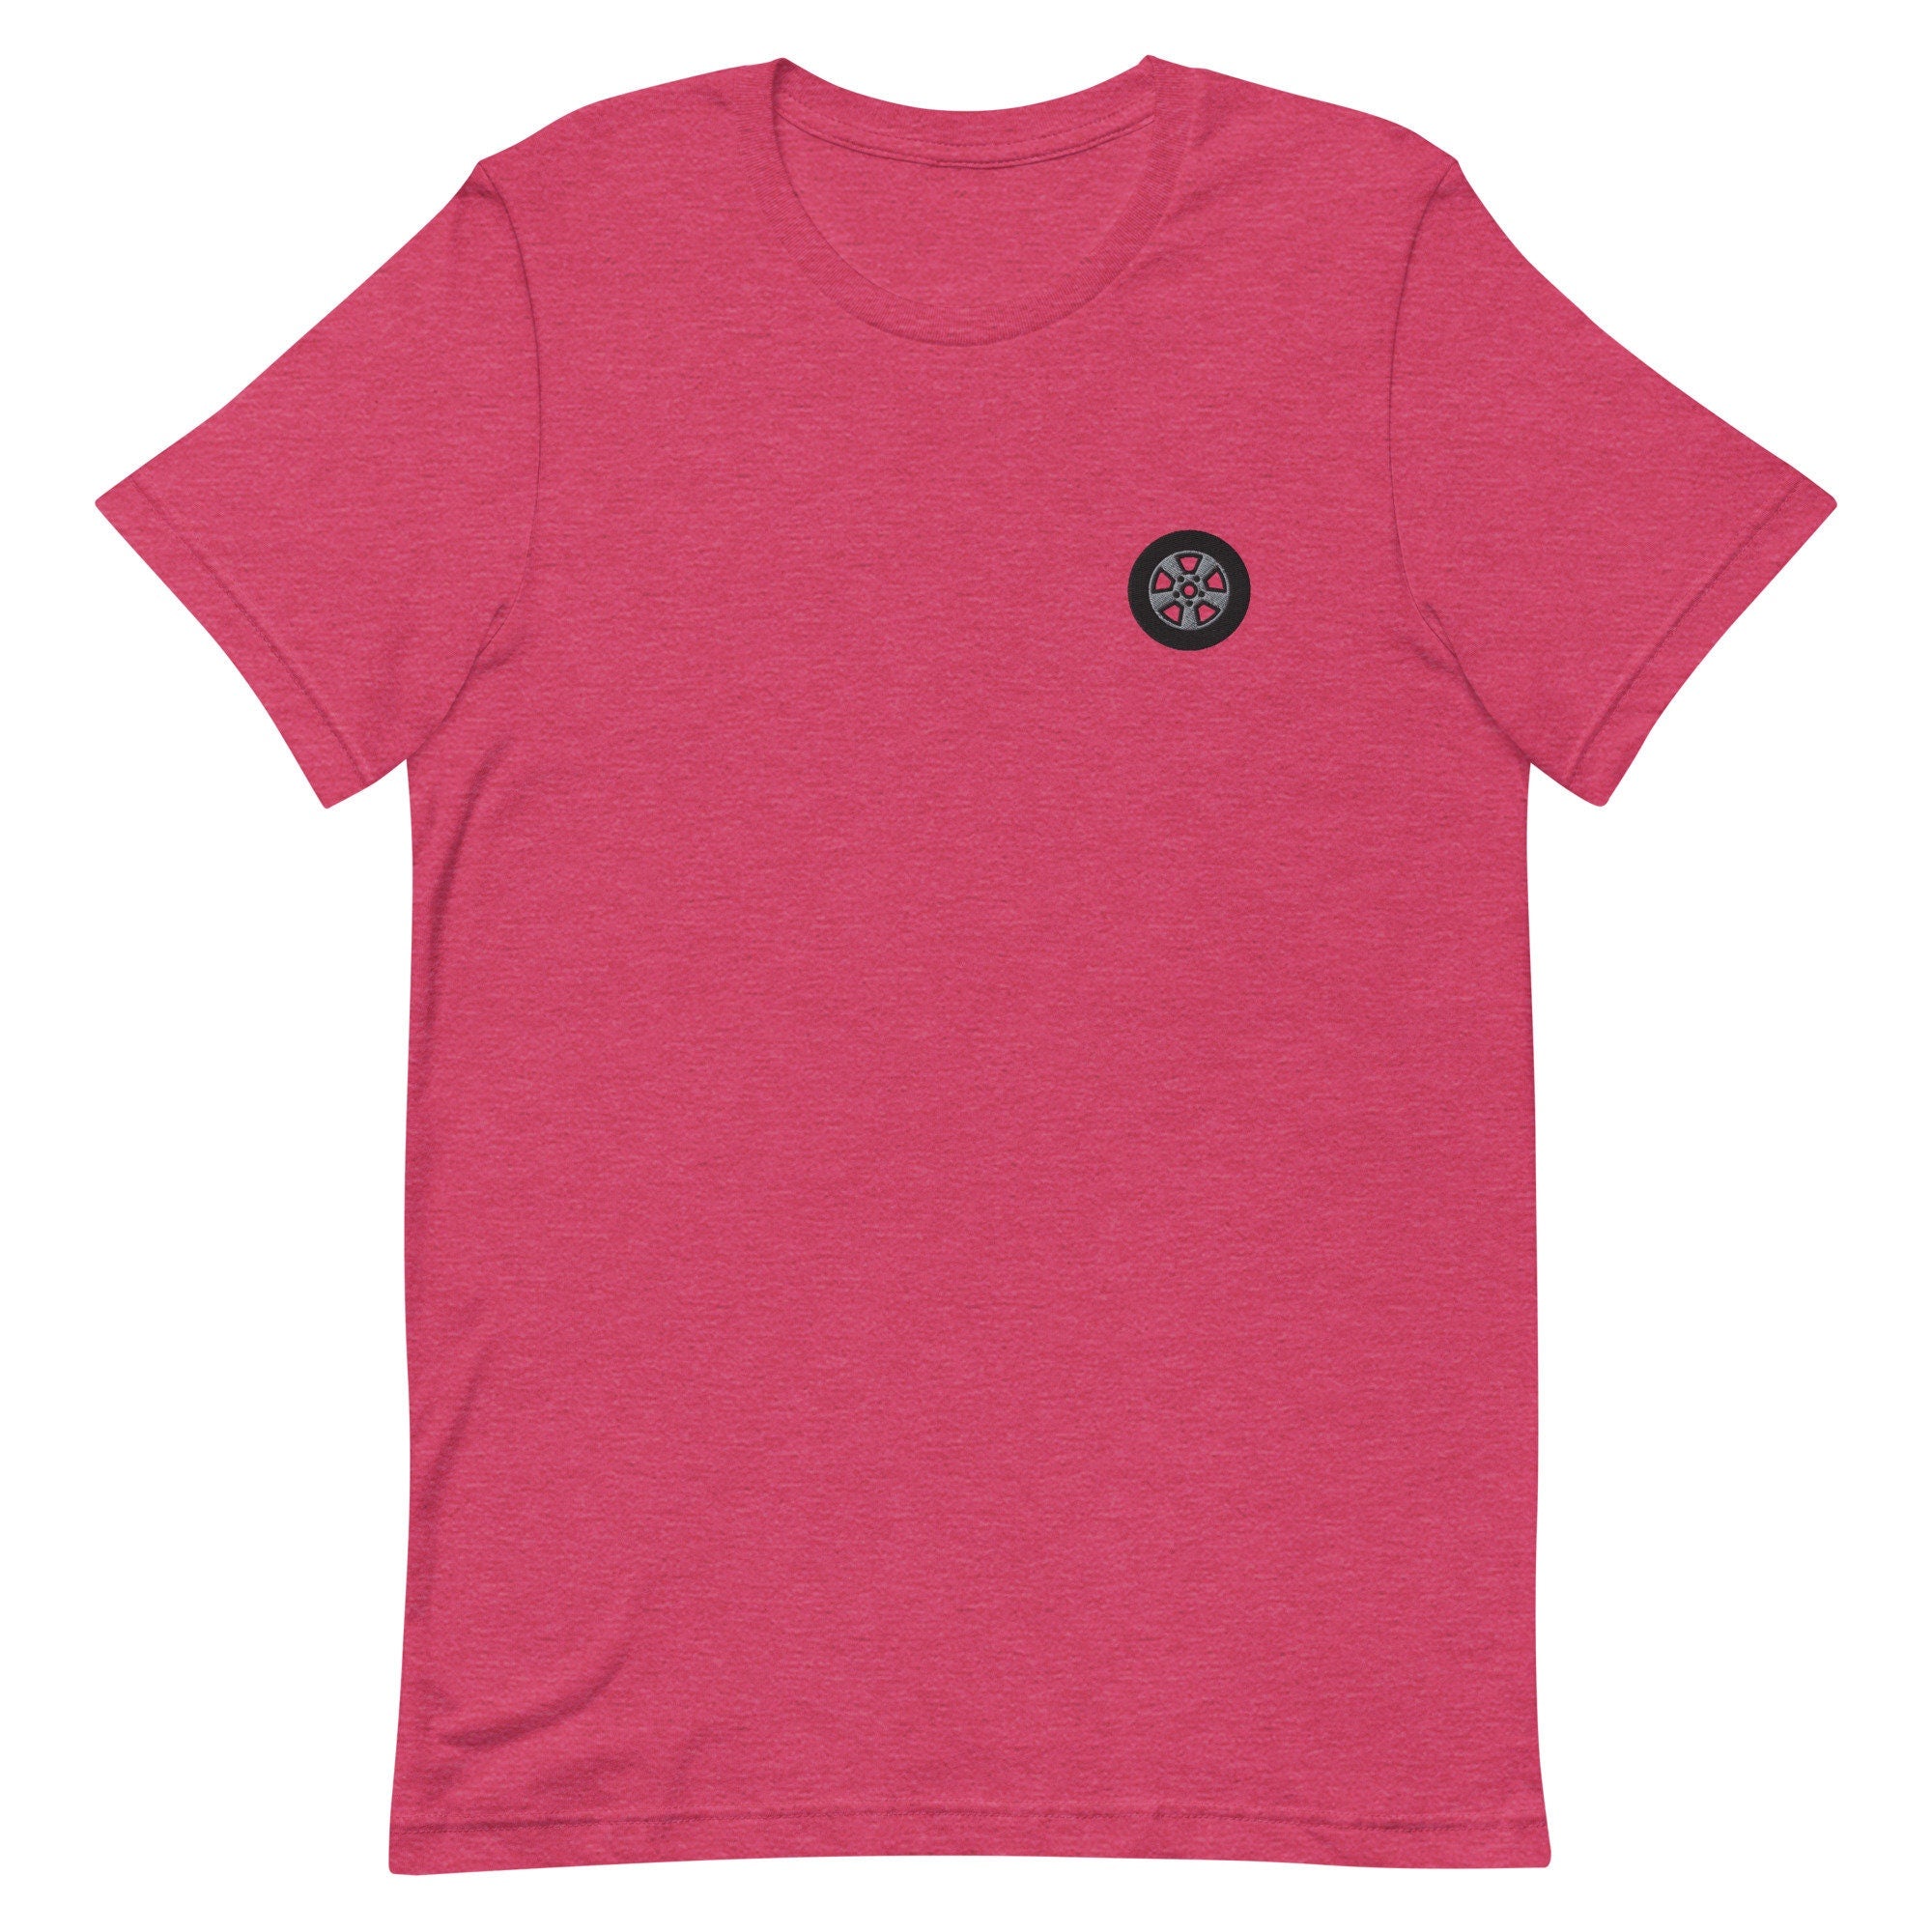 Tire Premium Men's T-Shirt, Embroidered Men's T-Shirt Gift for Boyfriend, Men's Short Sleeve Shirt - Multiple Colors